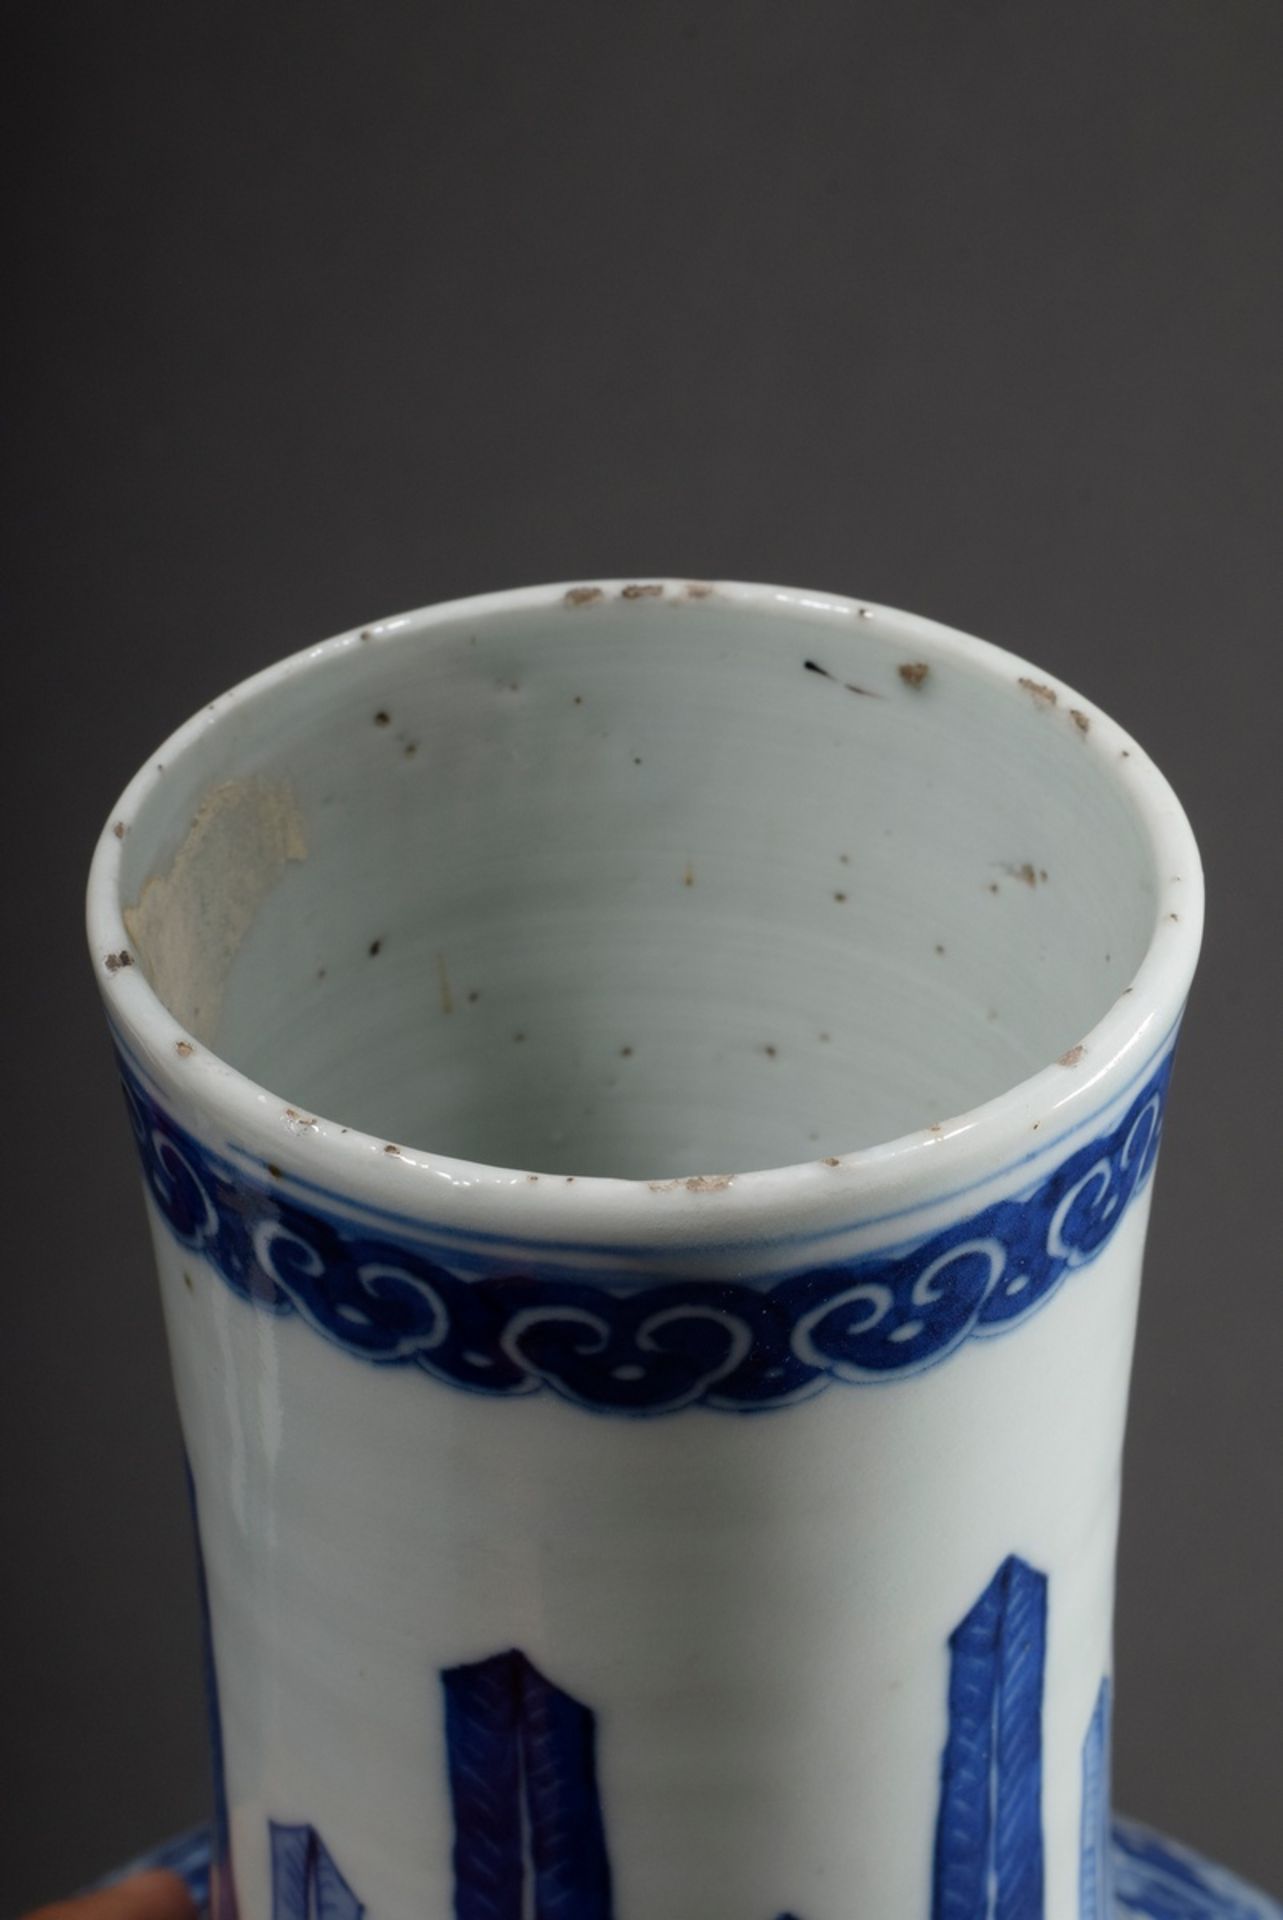 Chinesische Tianqiuping Porzellan Vase mit floralen Blaumalerei Dekor "Schmetterlinge und Ranken" s - Bild 2 aus 3